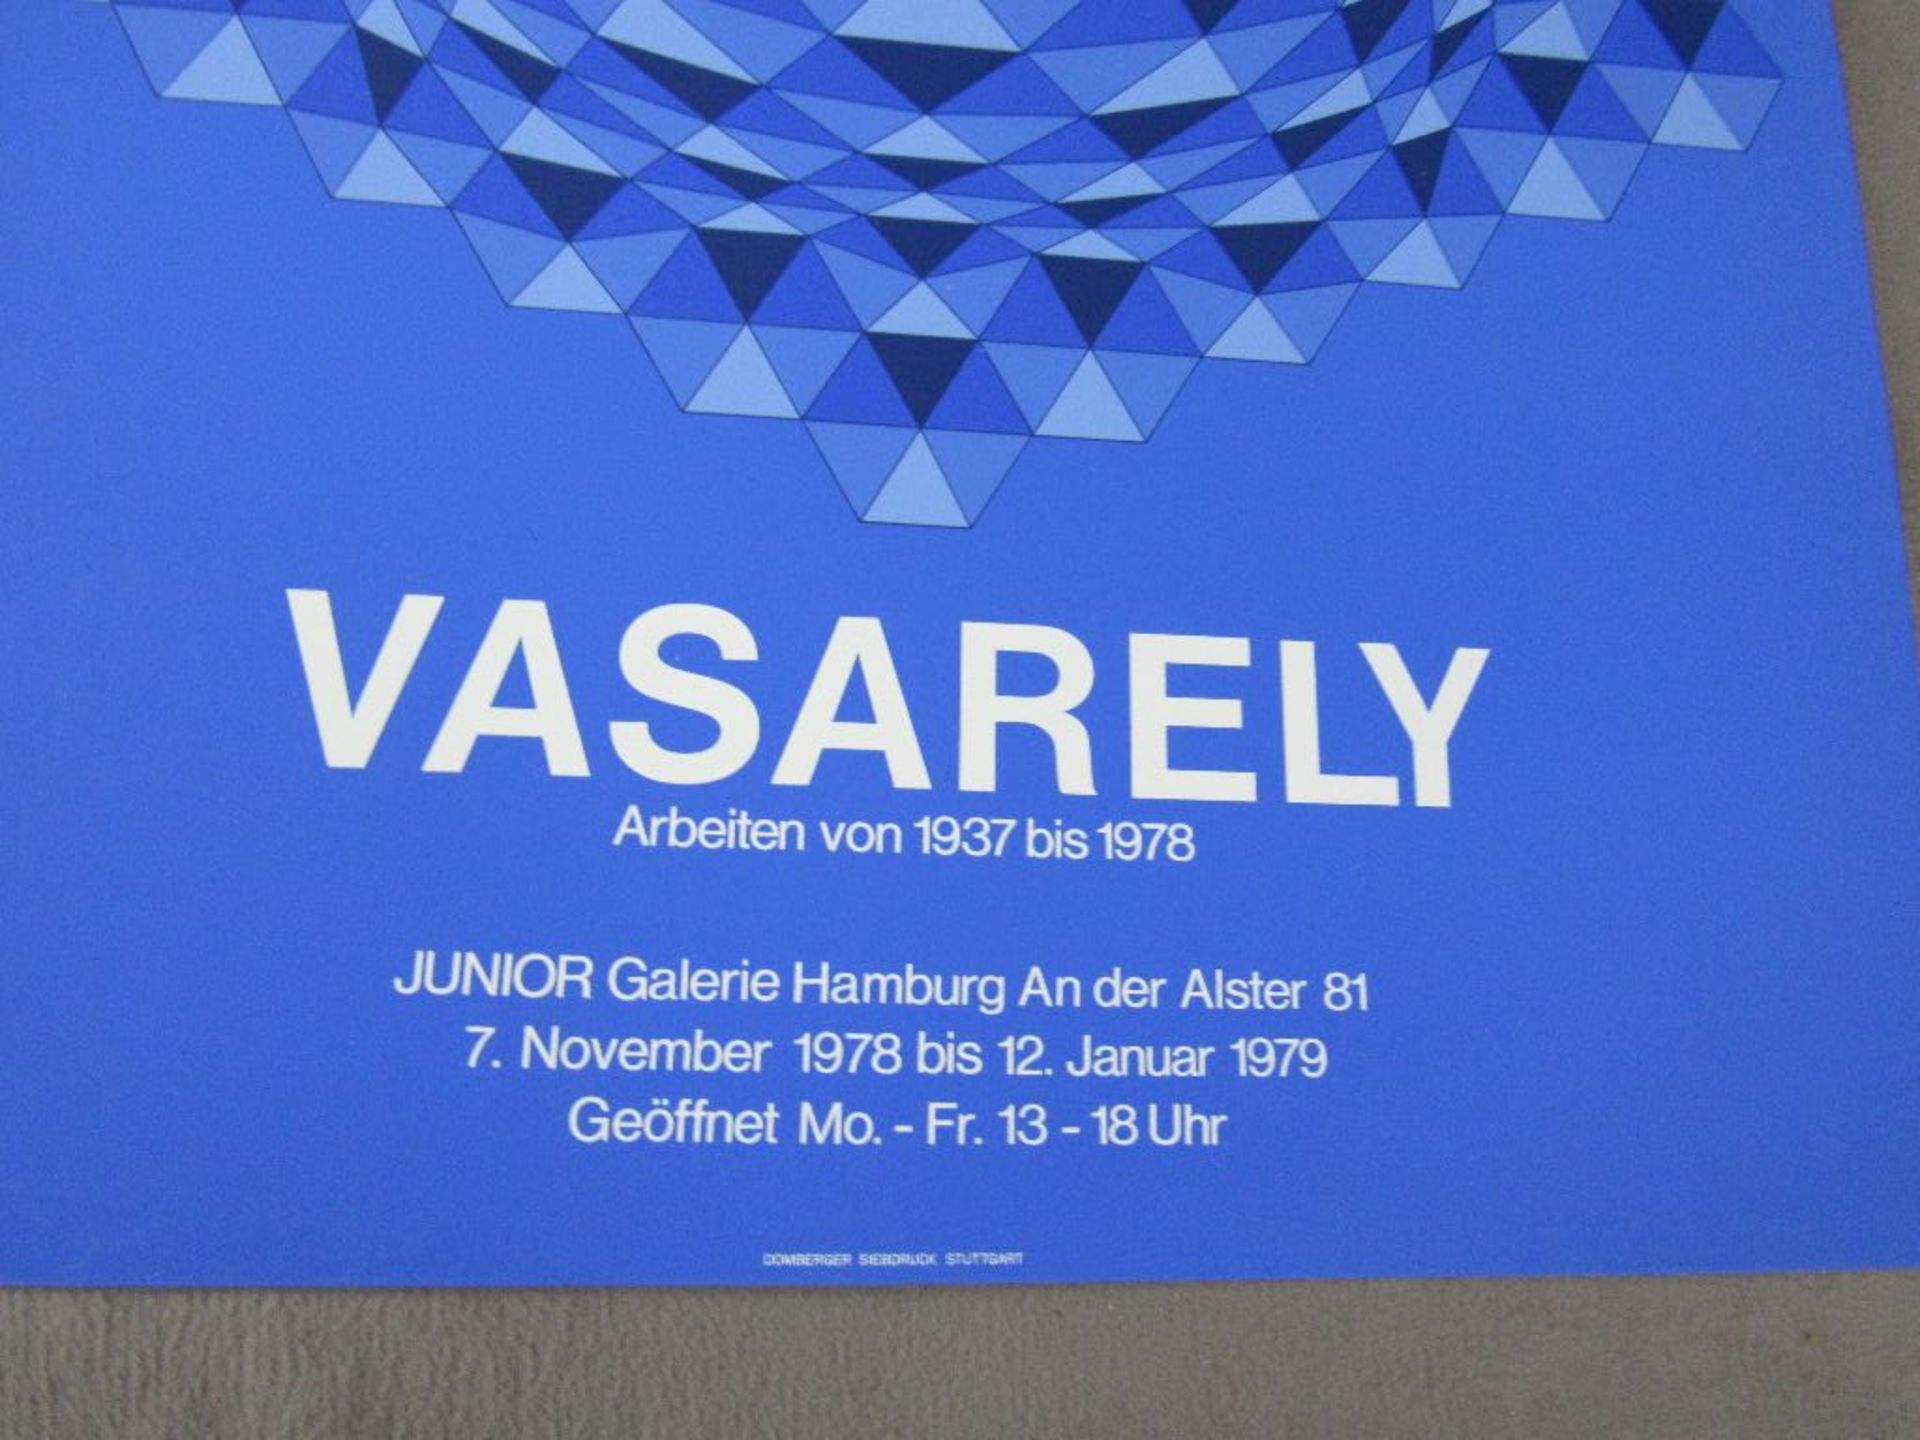 Victor Vasarely Ausstellungsplakat Poster Siebdruck 1978 Junior Galerie Hamburg 84x59cm - Bild 3 aus 3